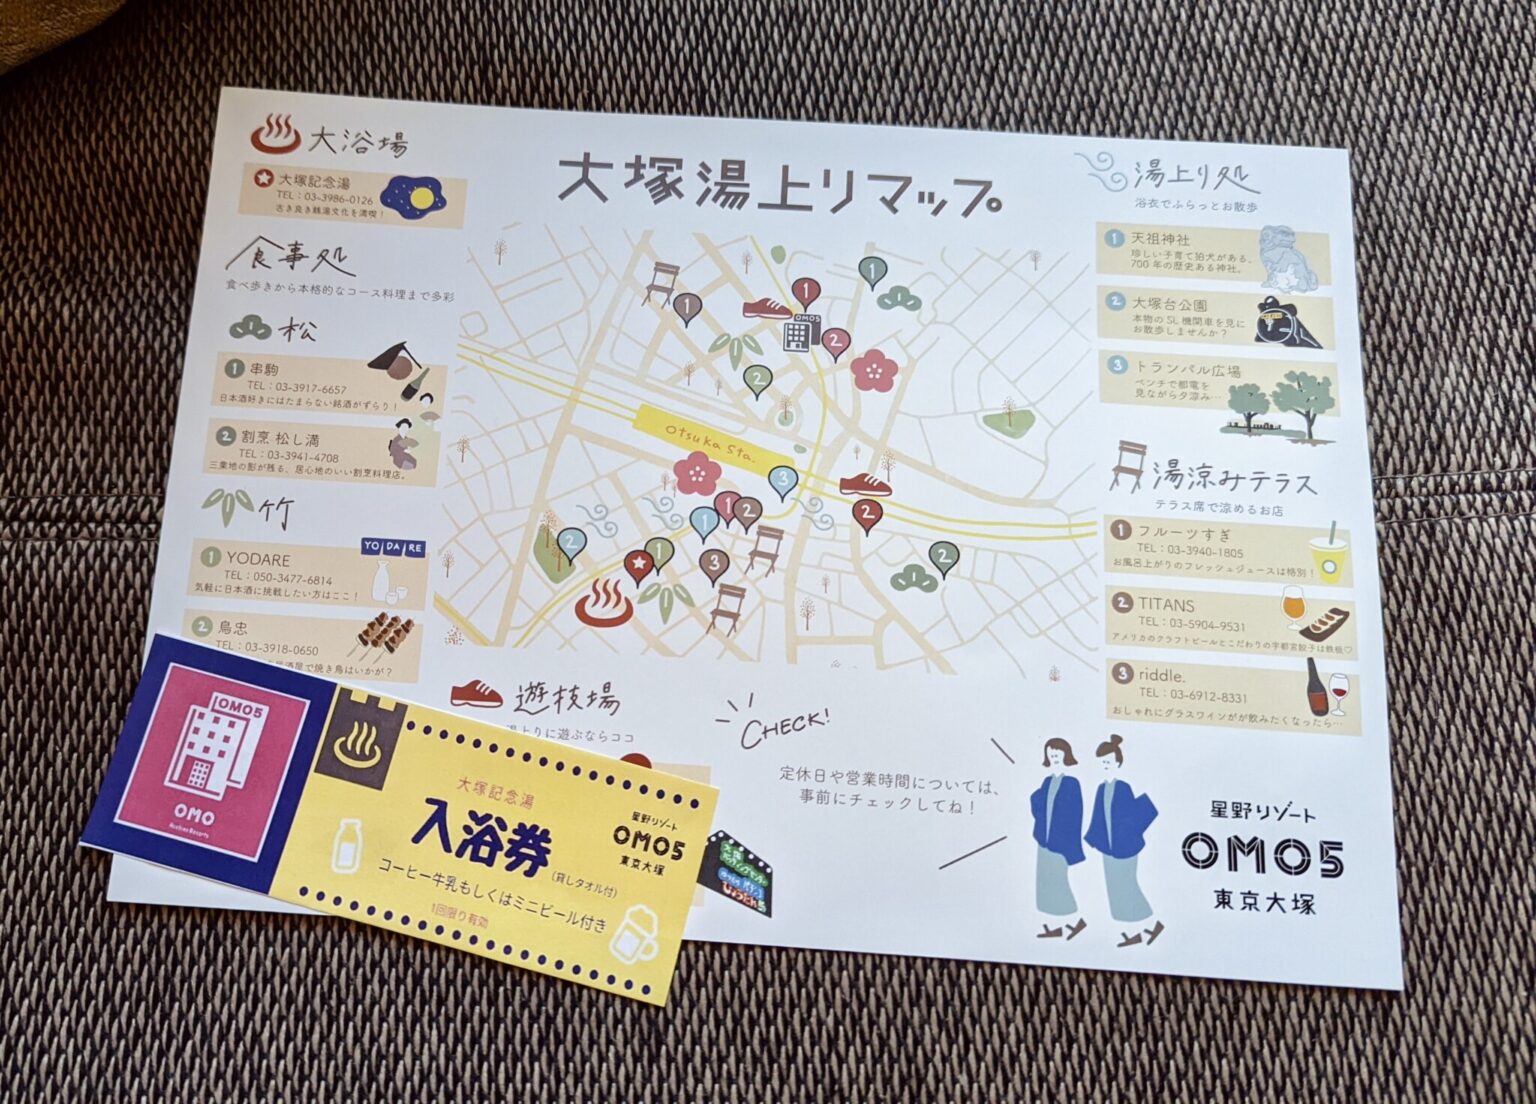 大塚 OMO5東京大塚 by 星野リゾート